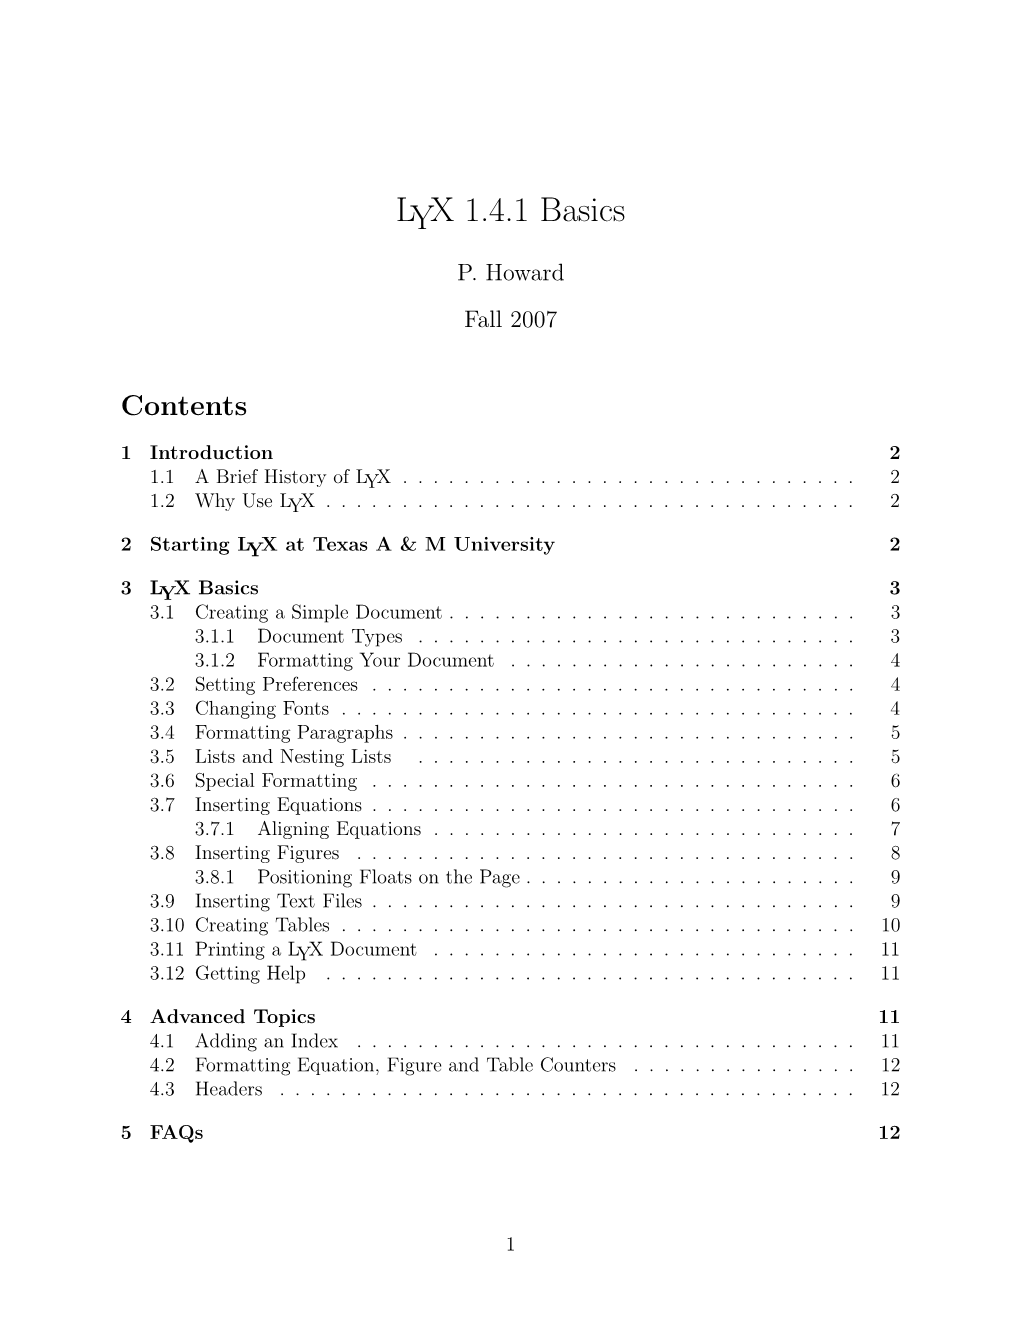 LYX 1.4.1 Basics